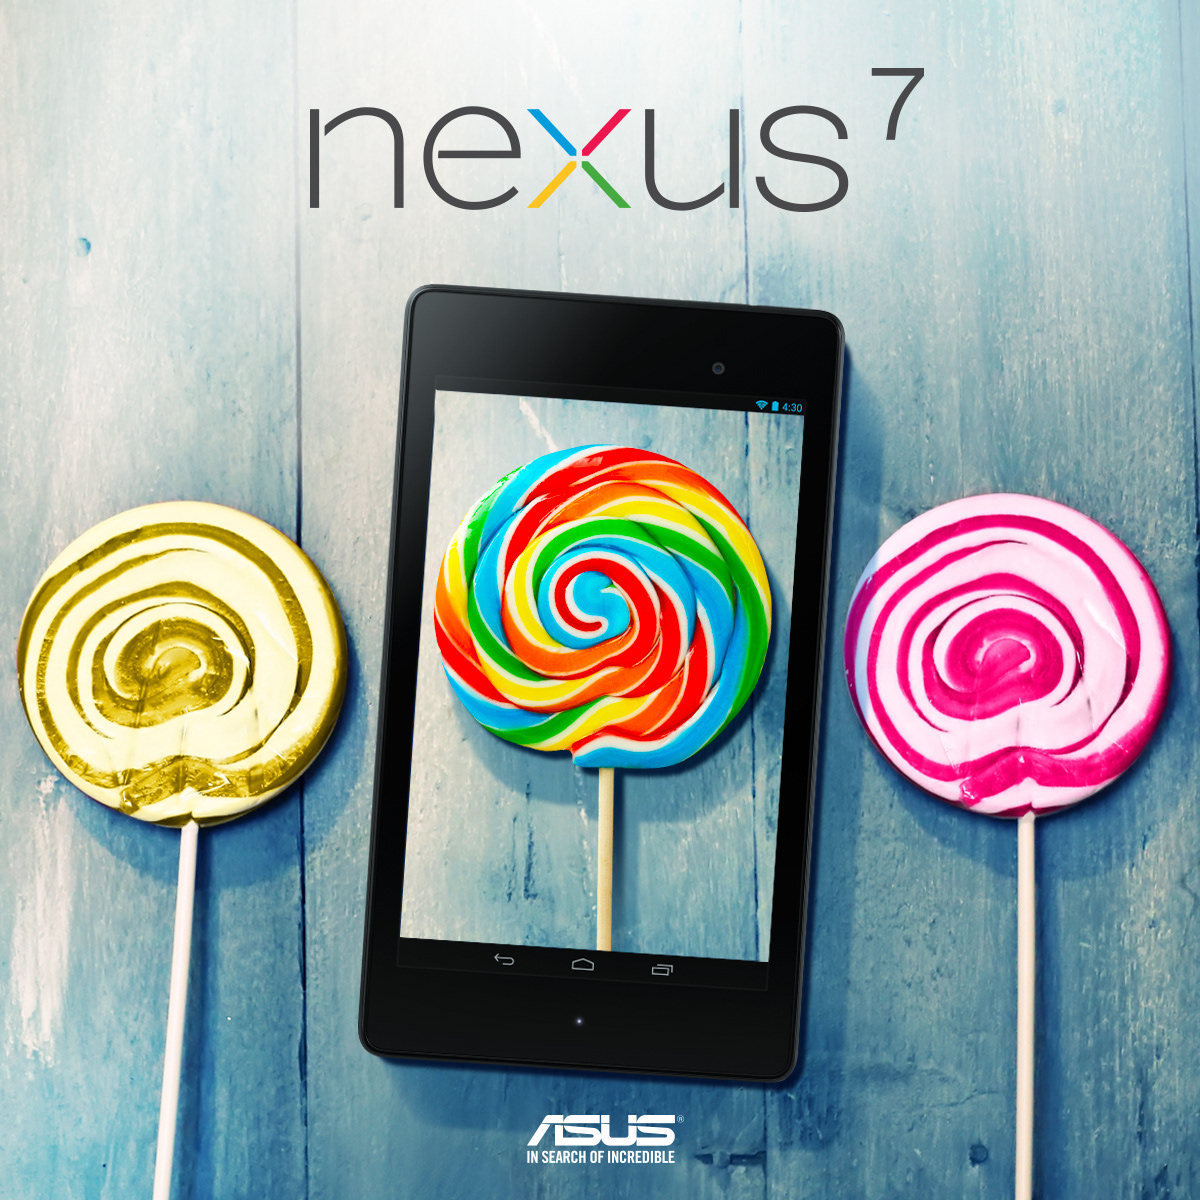 android nexus 7 lollipop